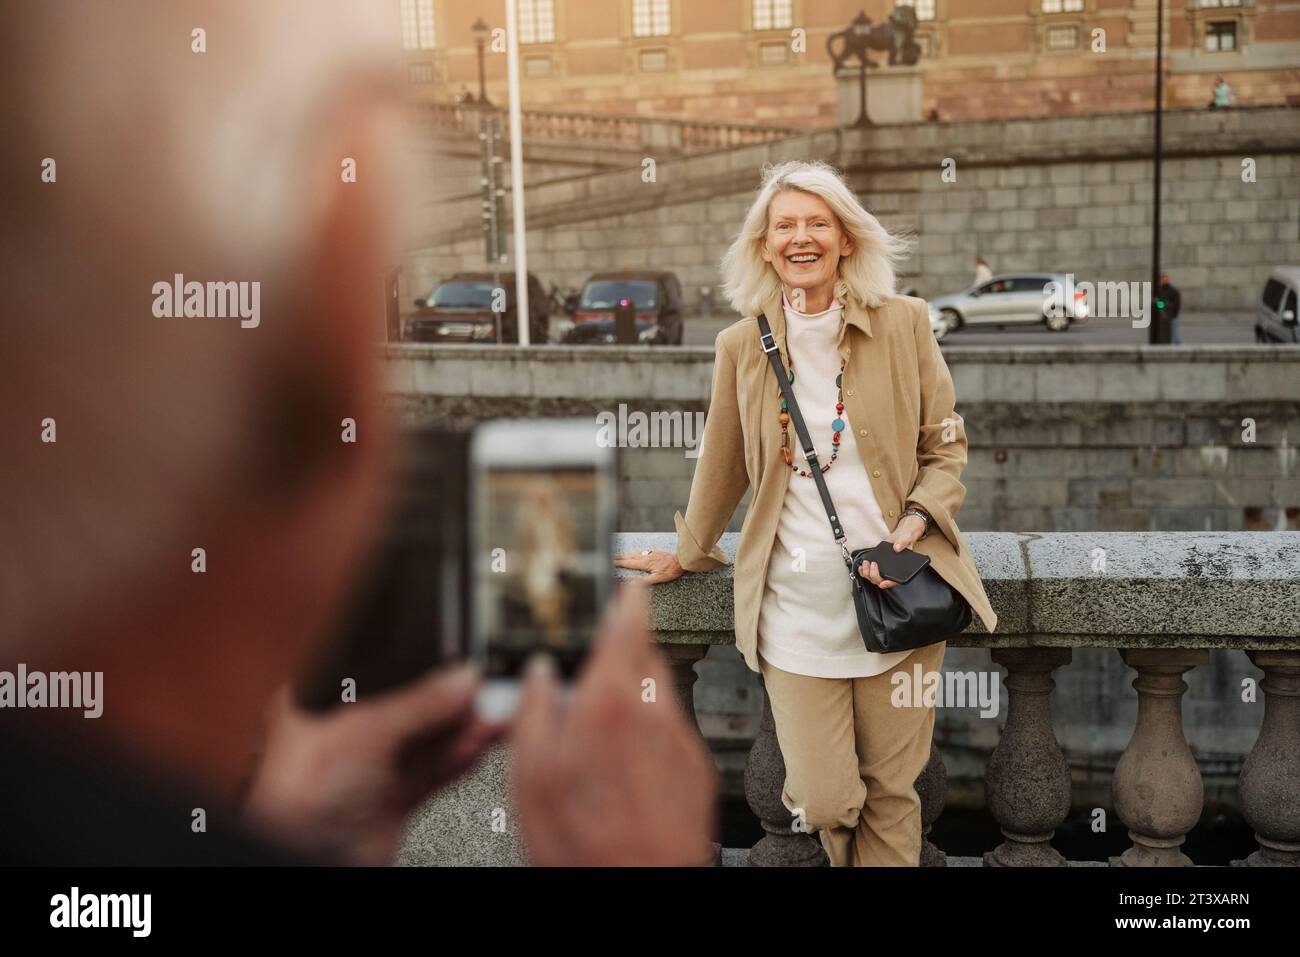 Homme senior photographiant une femme heureuse appuyée sur la rampe Banque D'Images